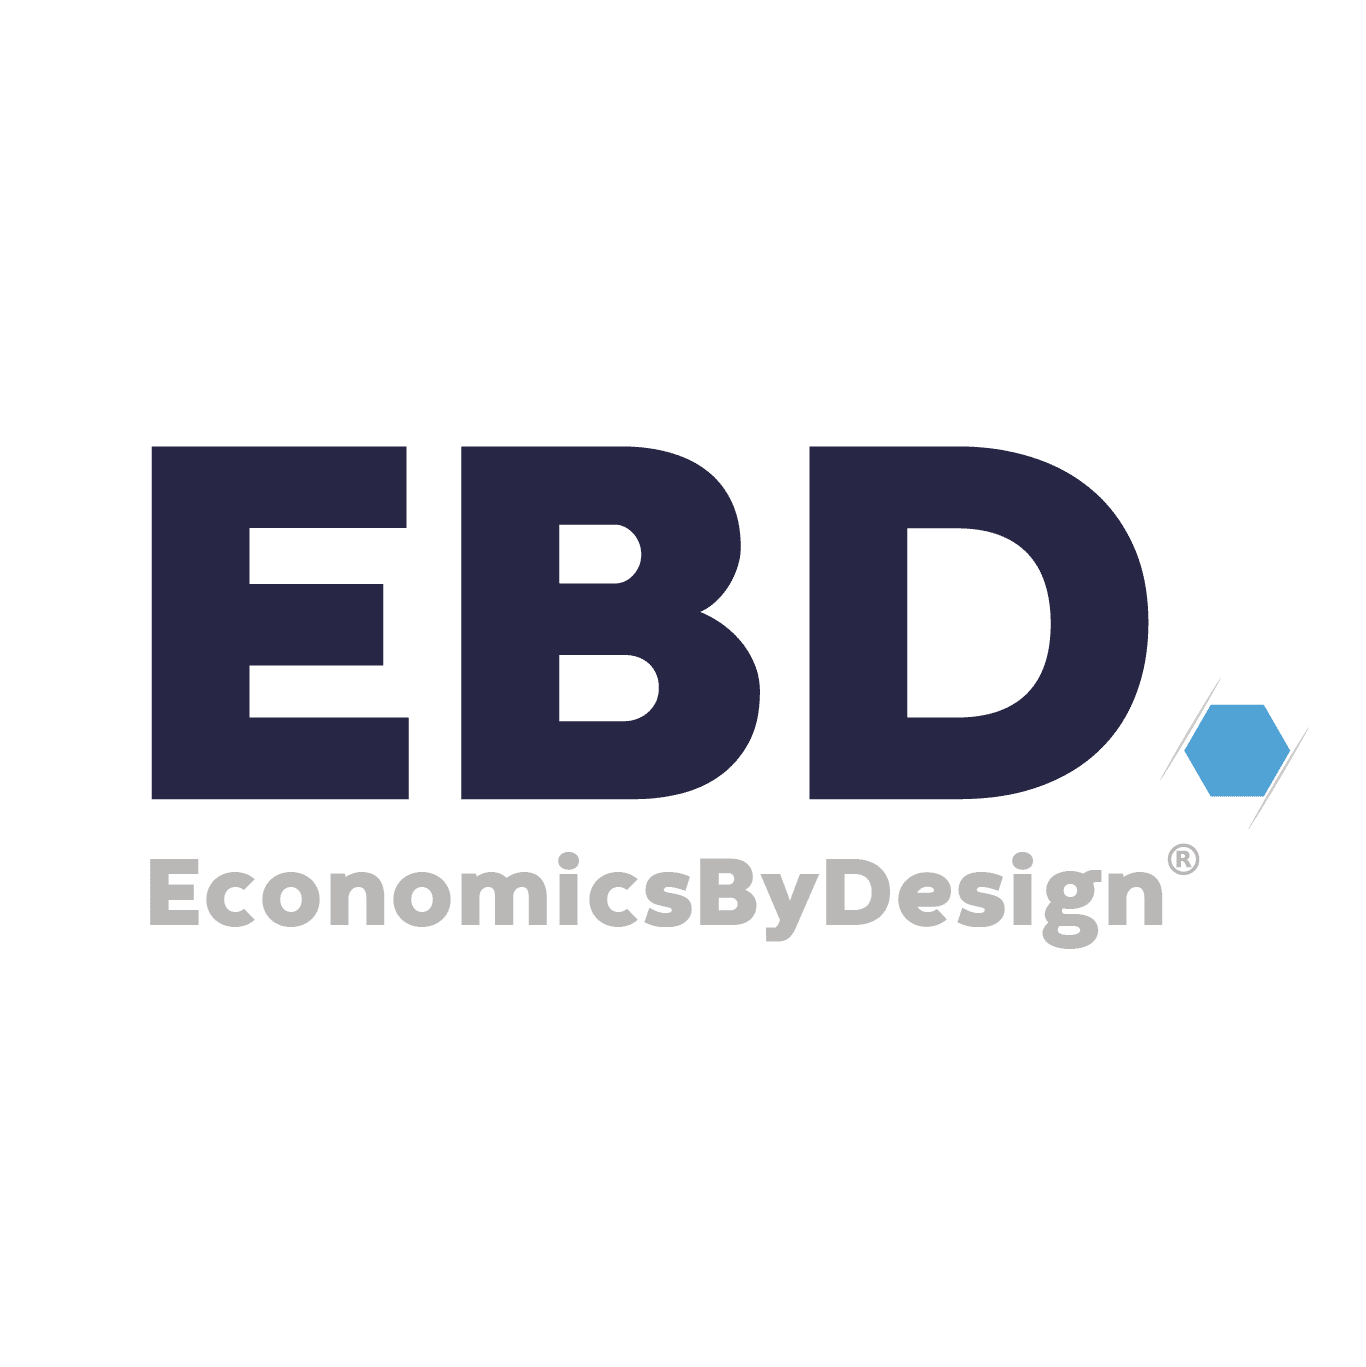 ebd logo economia por design